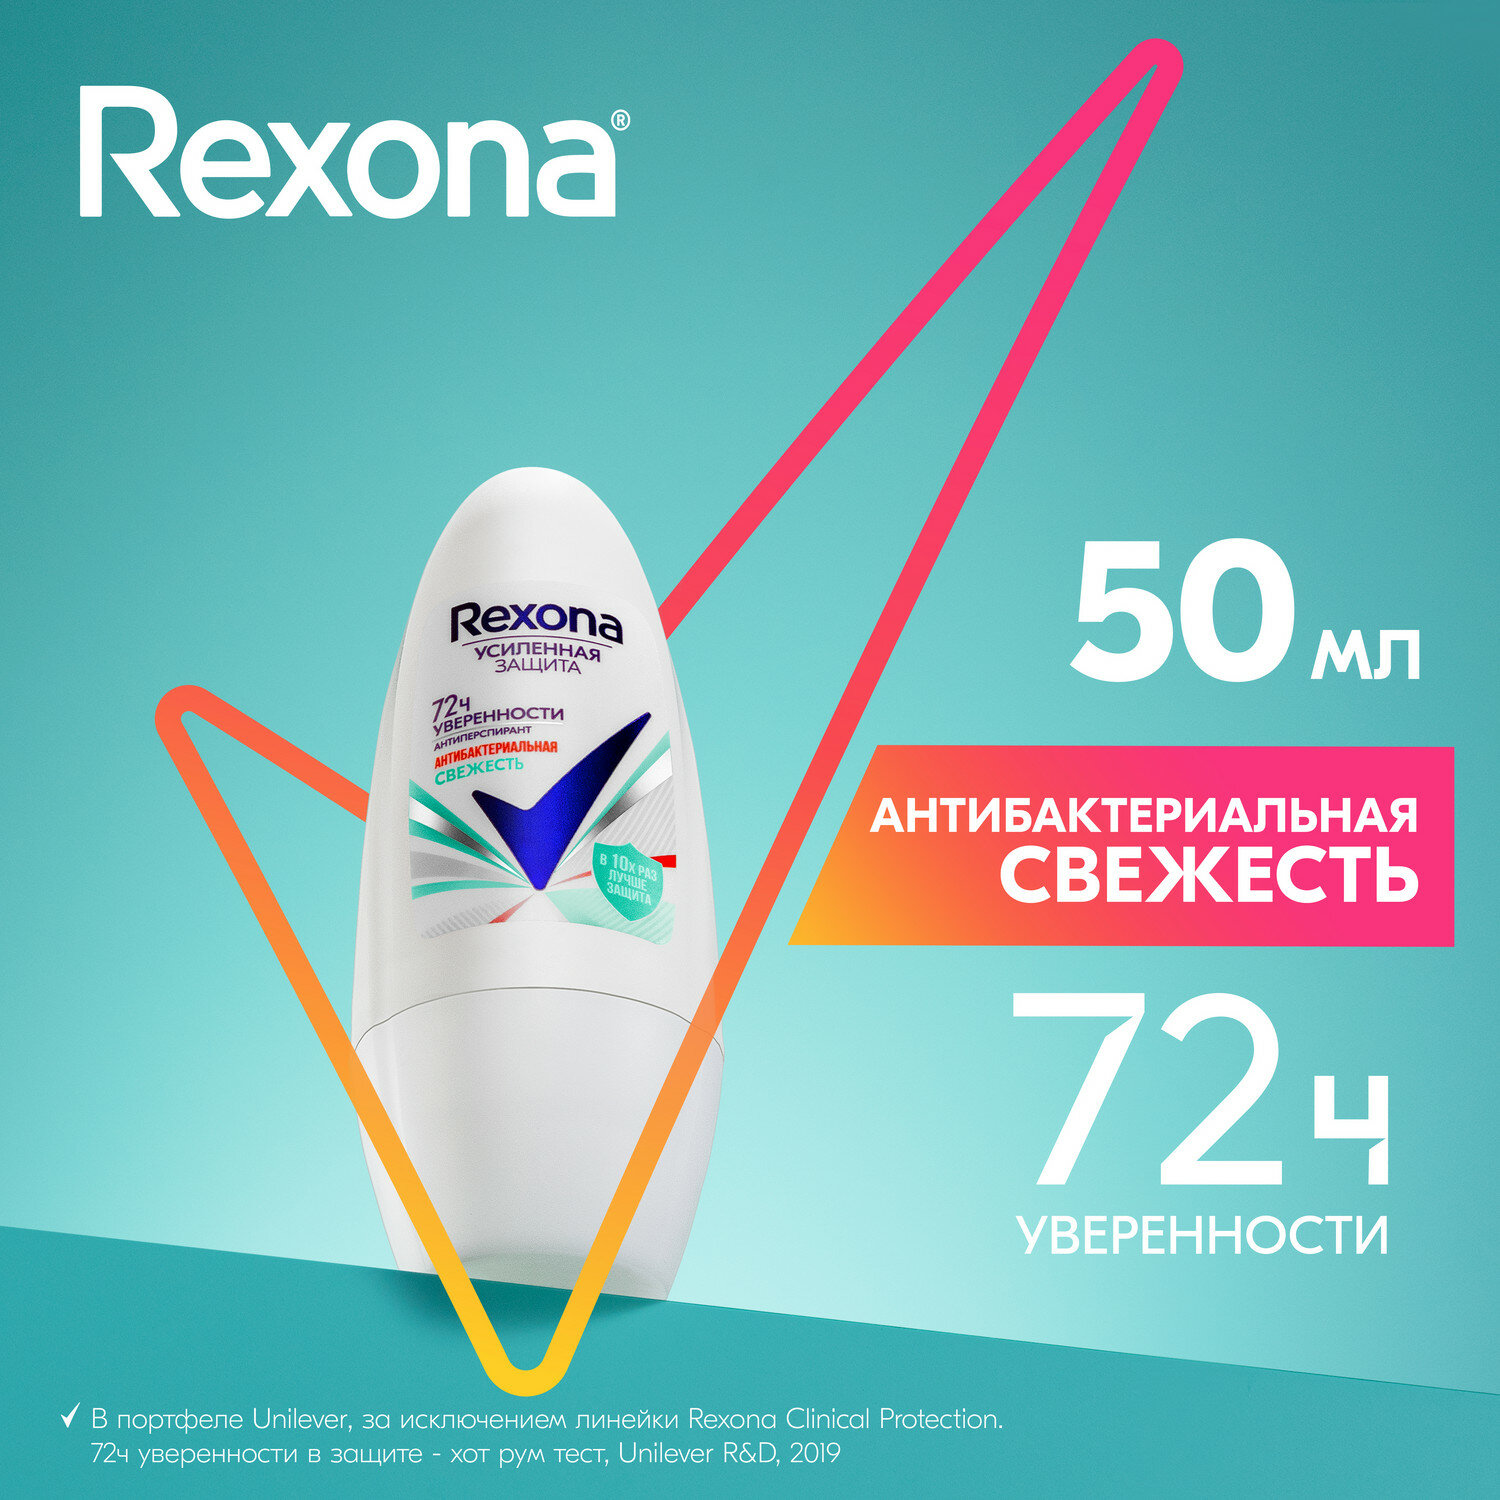 REXONA Део-шарик Антибактериальная свежесть 50мл